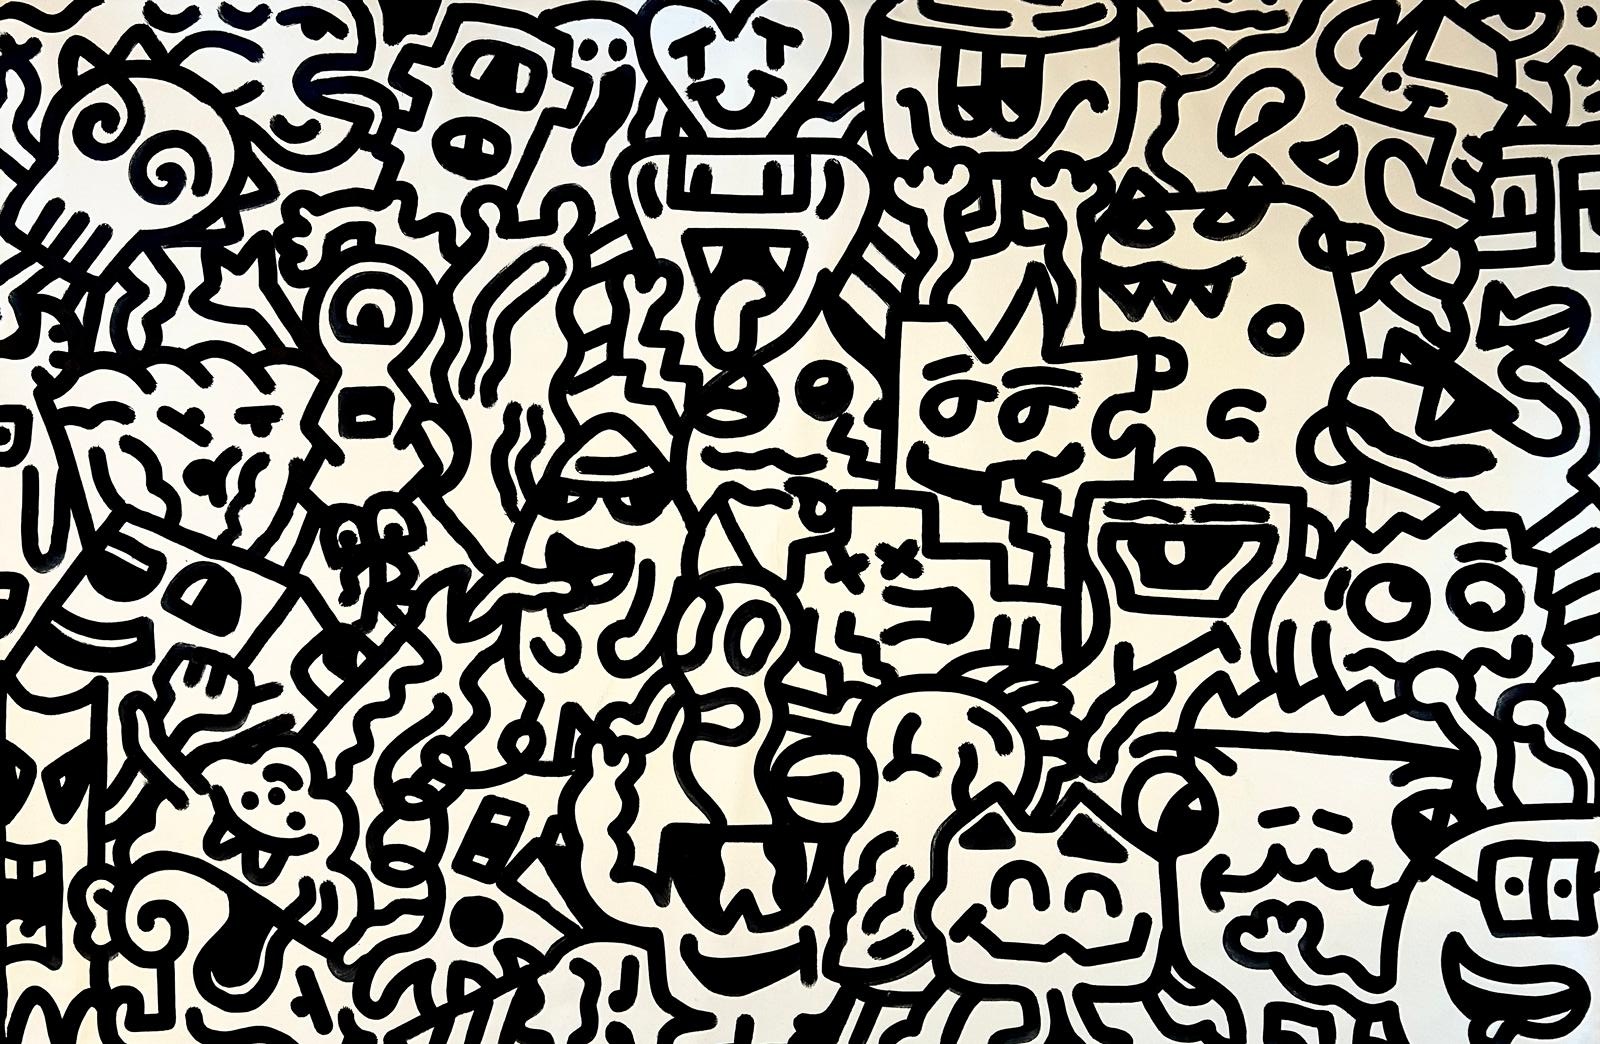 Doodle Hangout, 150x100, Marker on Canvas, 2022